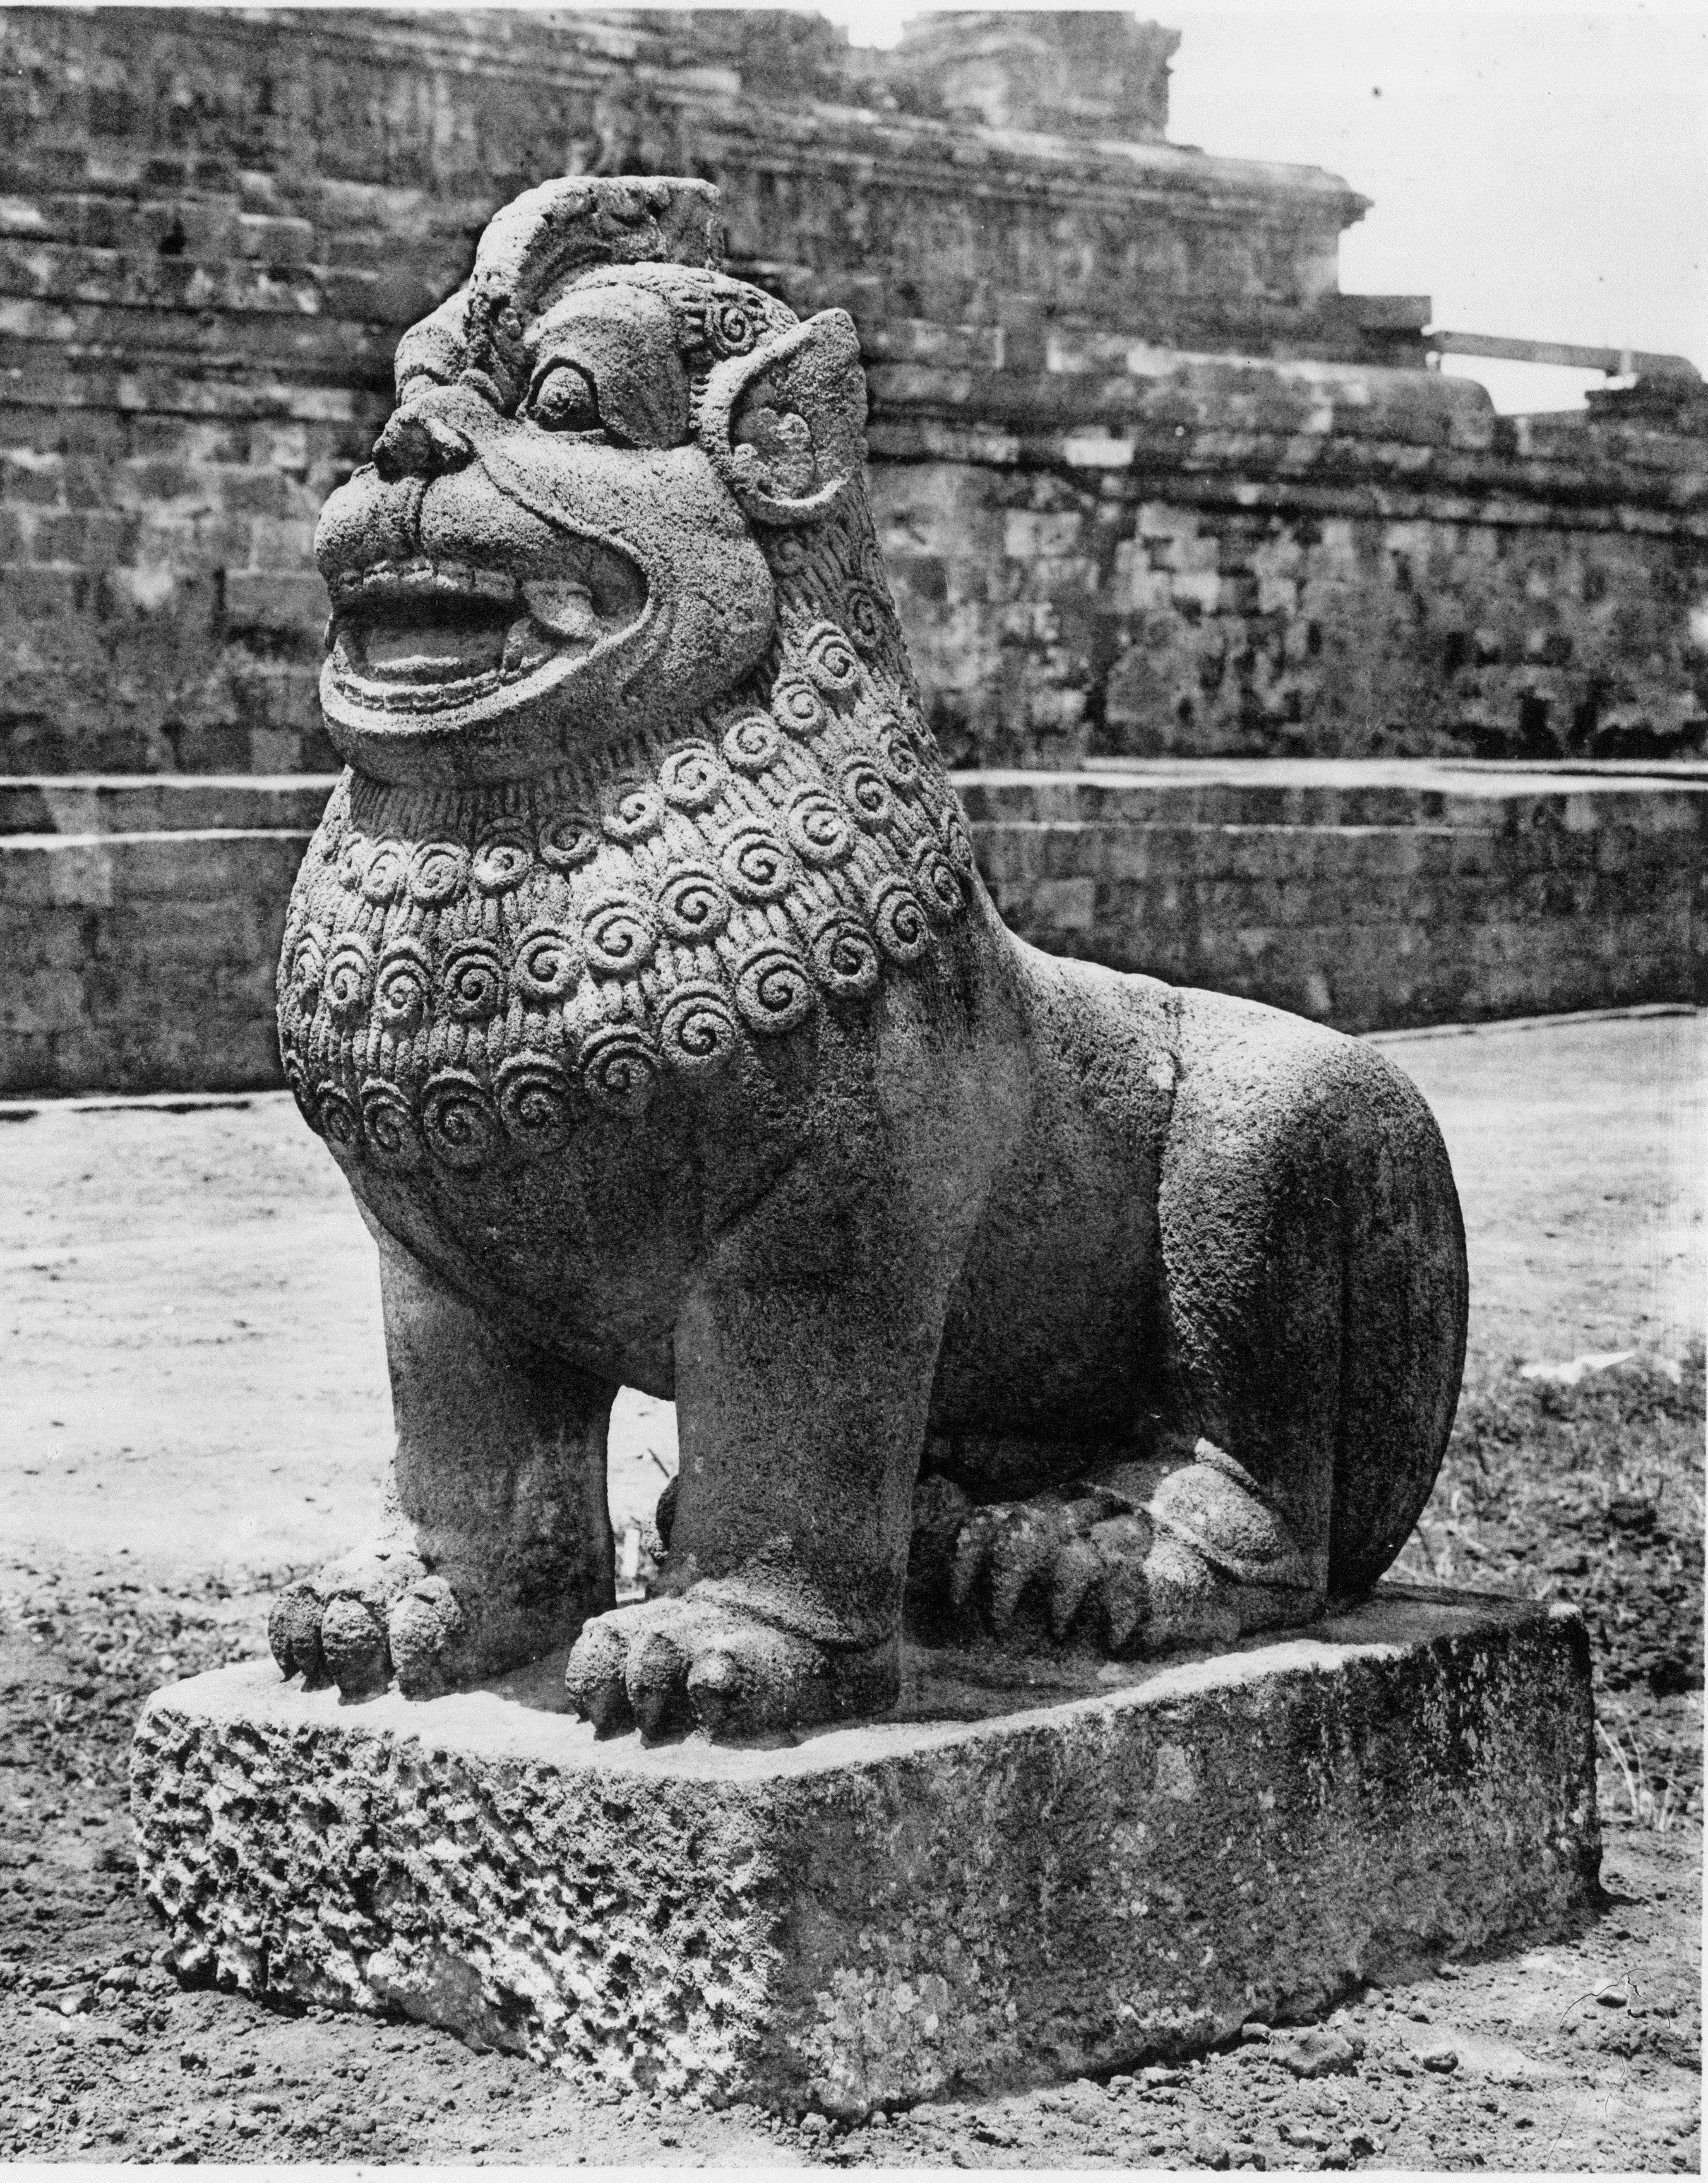 78+ Gambar Relief Binatang Pada Candi Borobudur Terlihat Keren